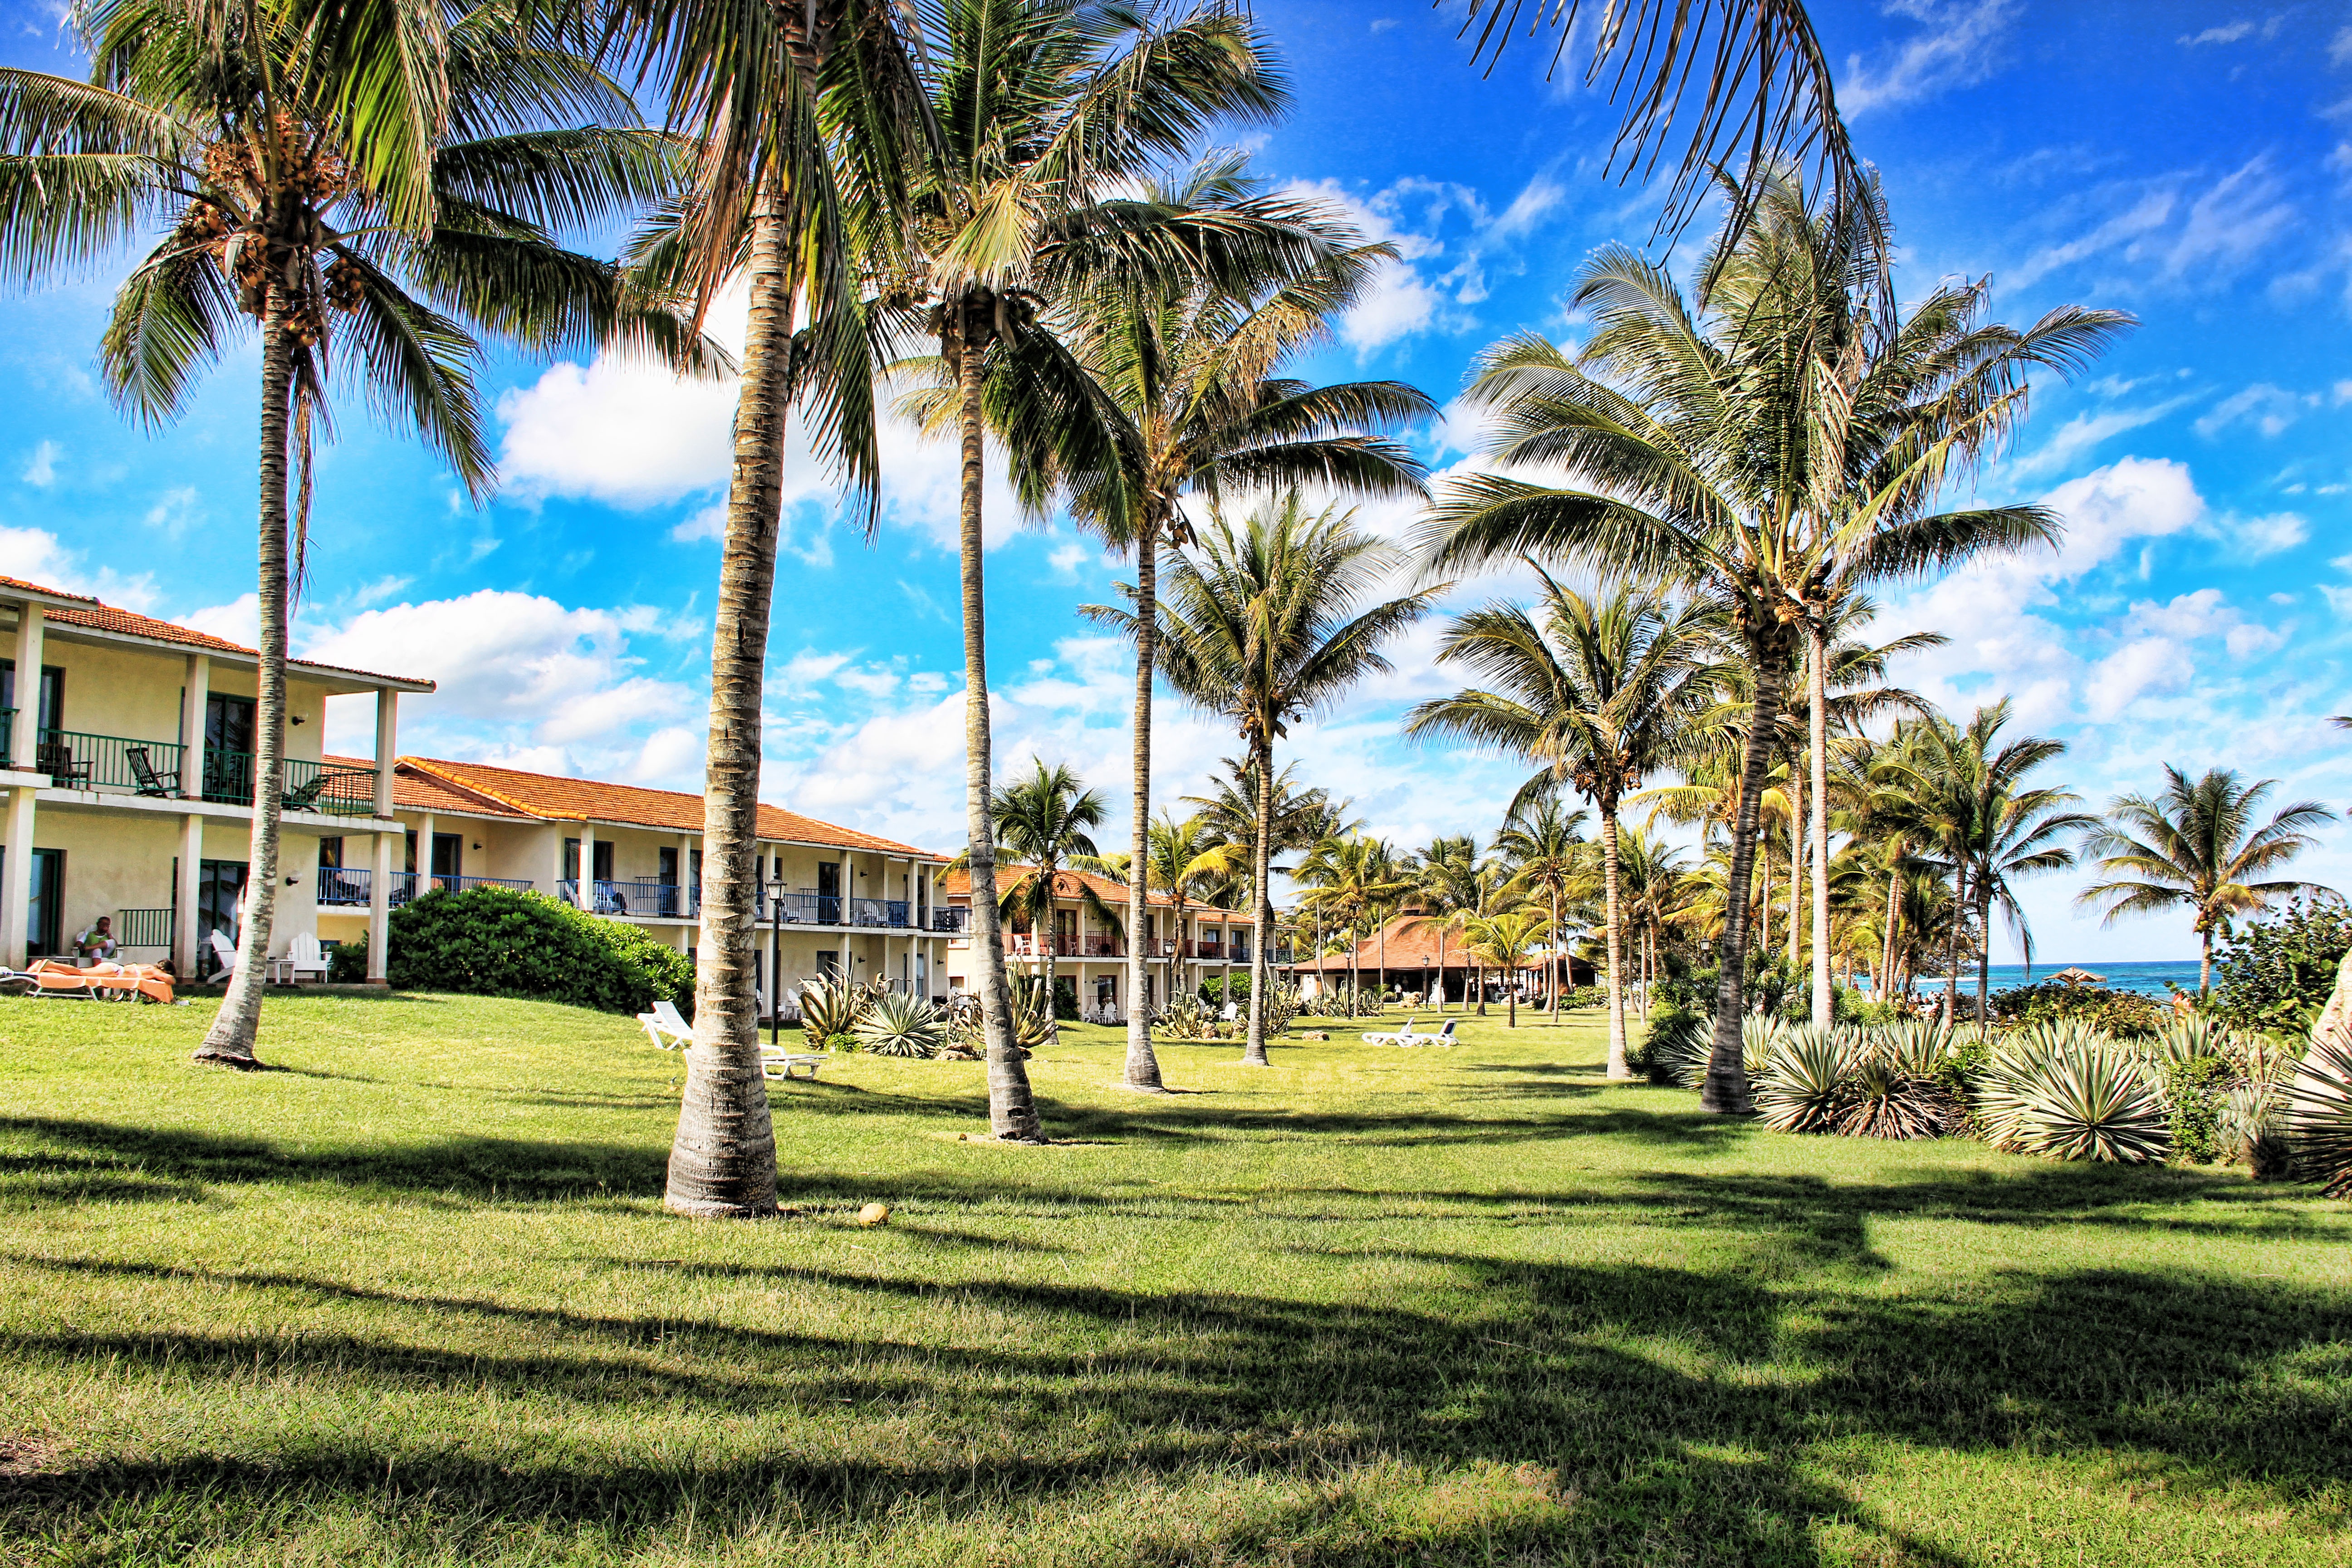 Фото пляж, дерево, небо, газон, аллея, отпуск, праздник, туризм, куб, отель, курорт, плантация, недвижимости, карибский бассейн, пальмовые деревья - бесплатные картинки на Fonwall